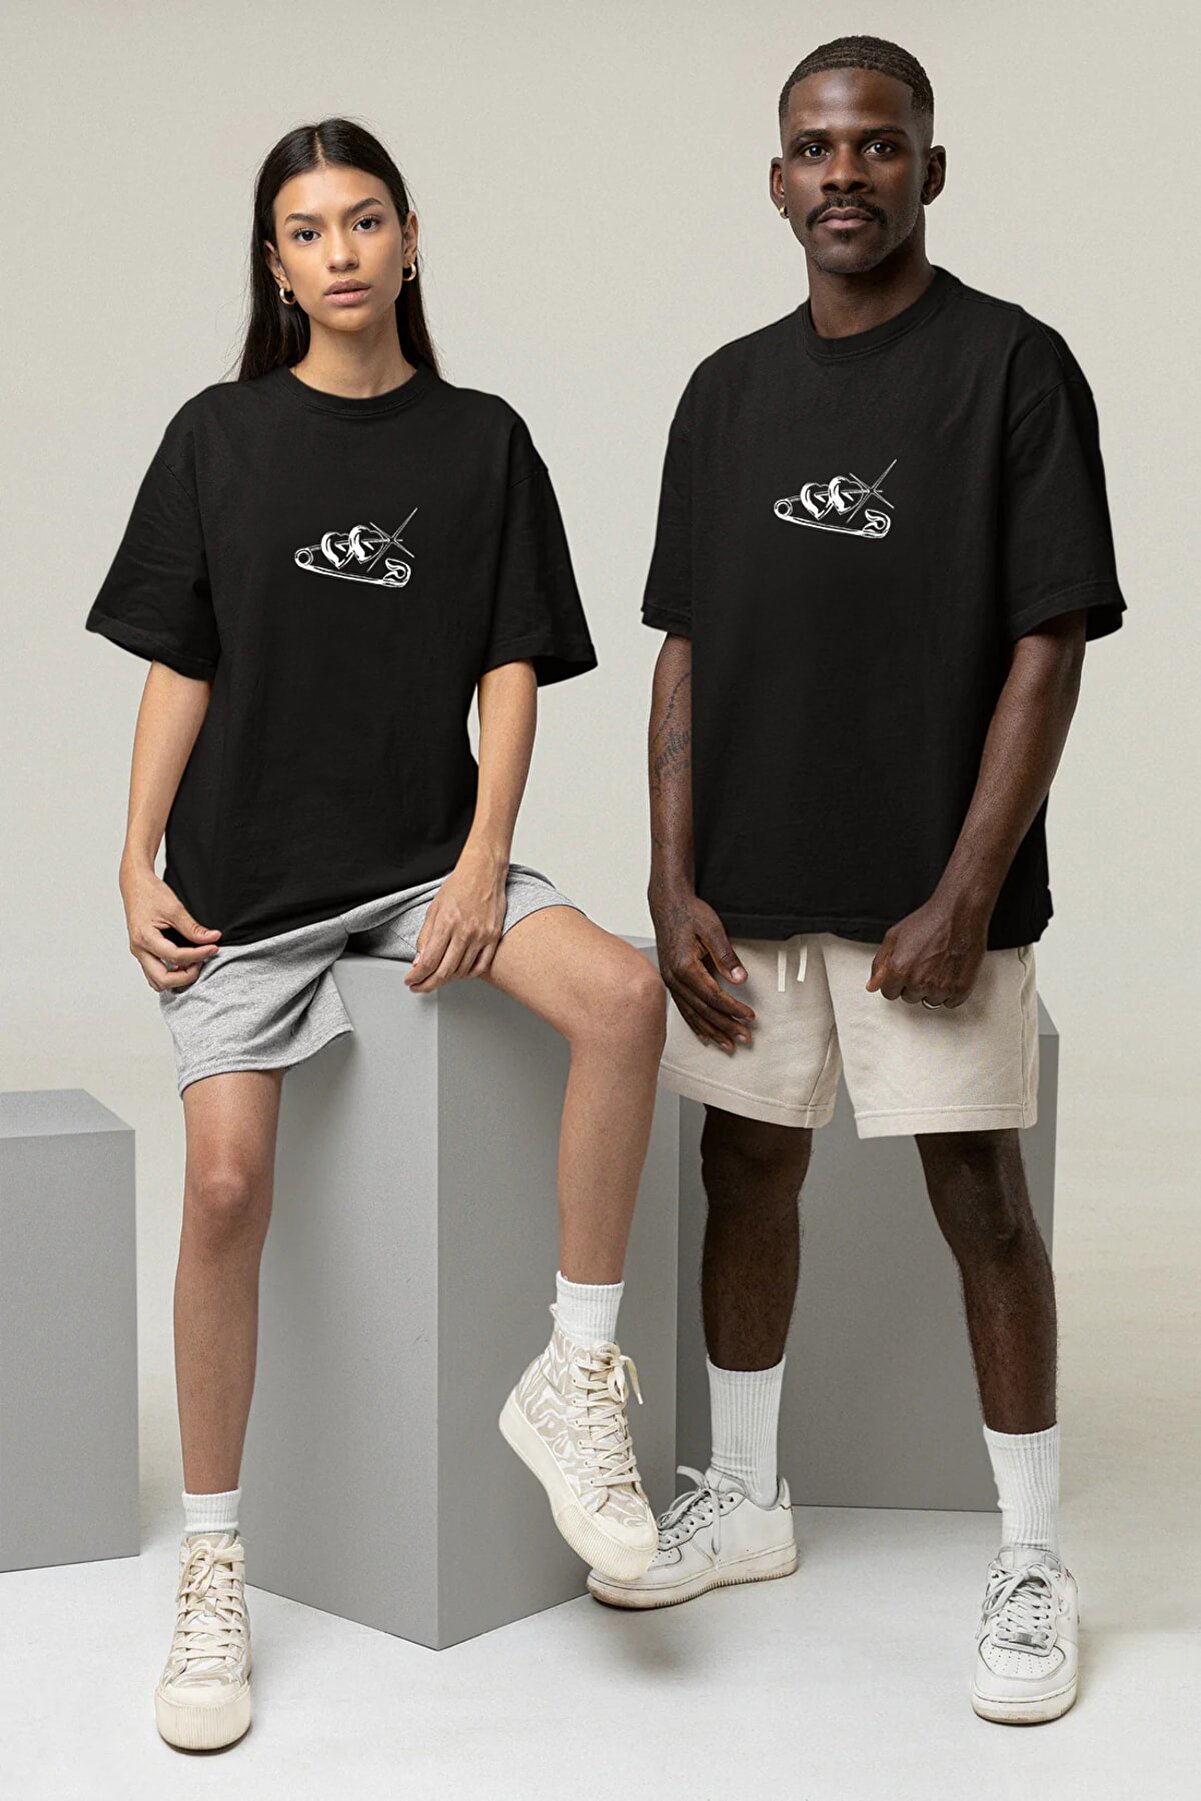 Pear Wear Iki Kalp Sevgili Çift Takım Tişört Siyah Beyaz Oversize Motto Sevgili Couple T-shirt